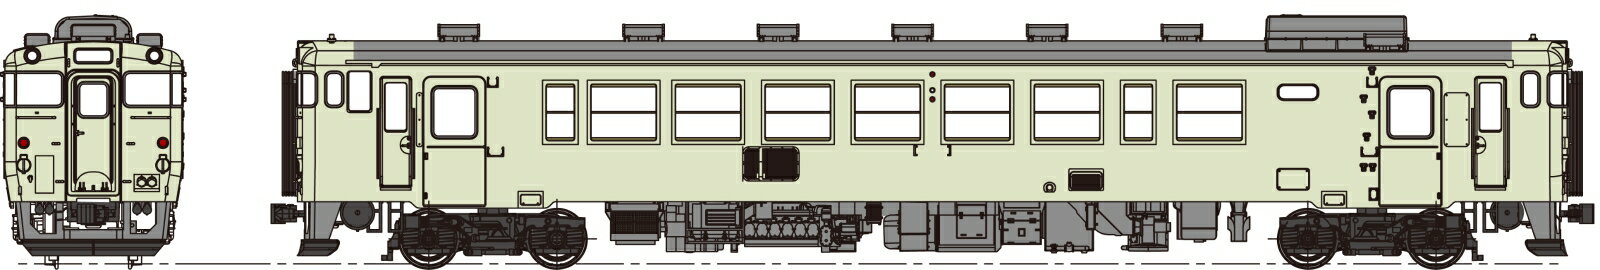 キハ40-500代クリーム10号、動力付 【TW-K40-500EM】 (鉄道模型 HOゲージ)